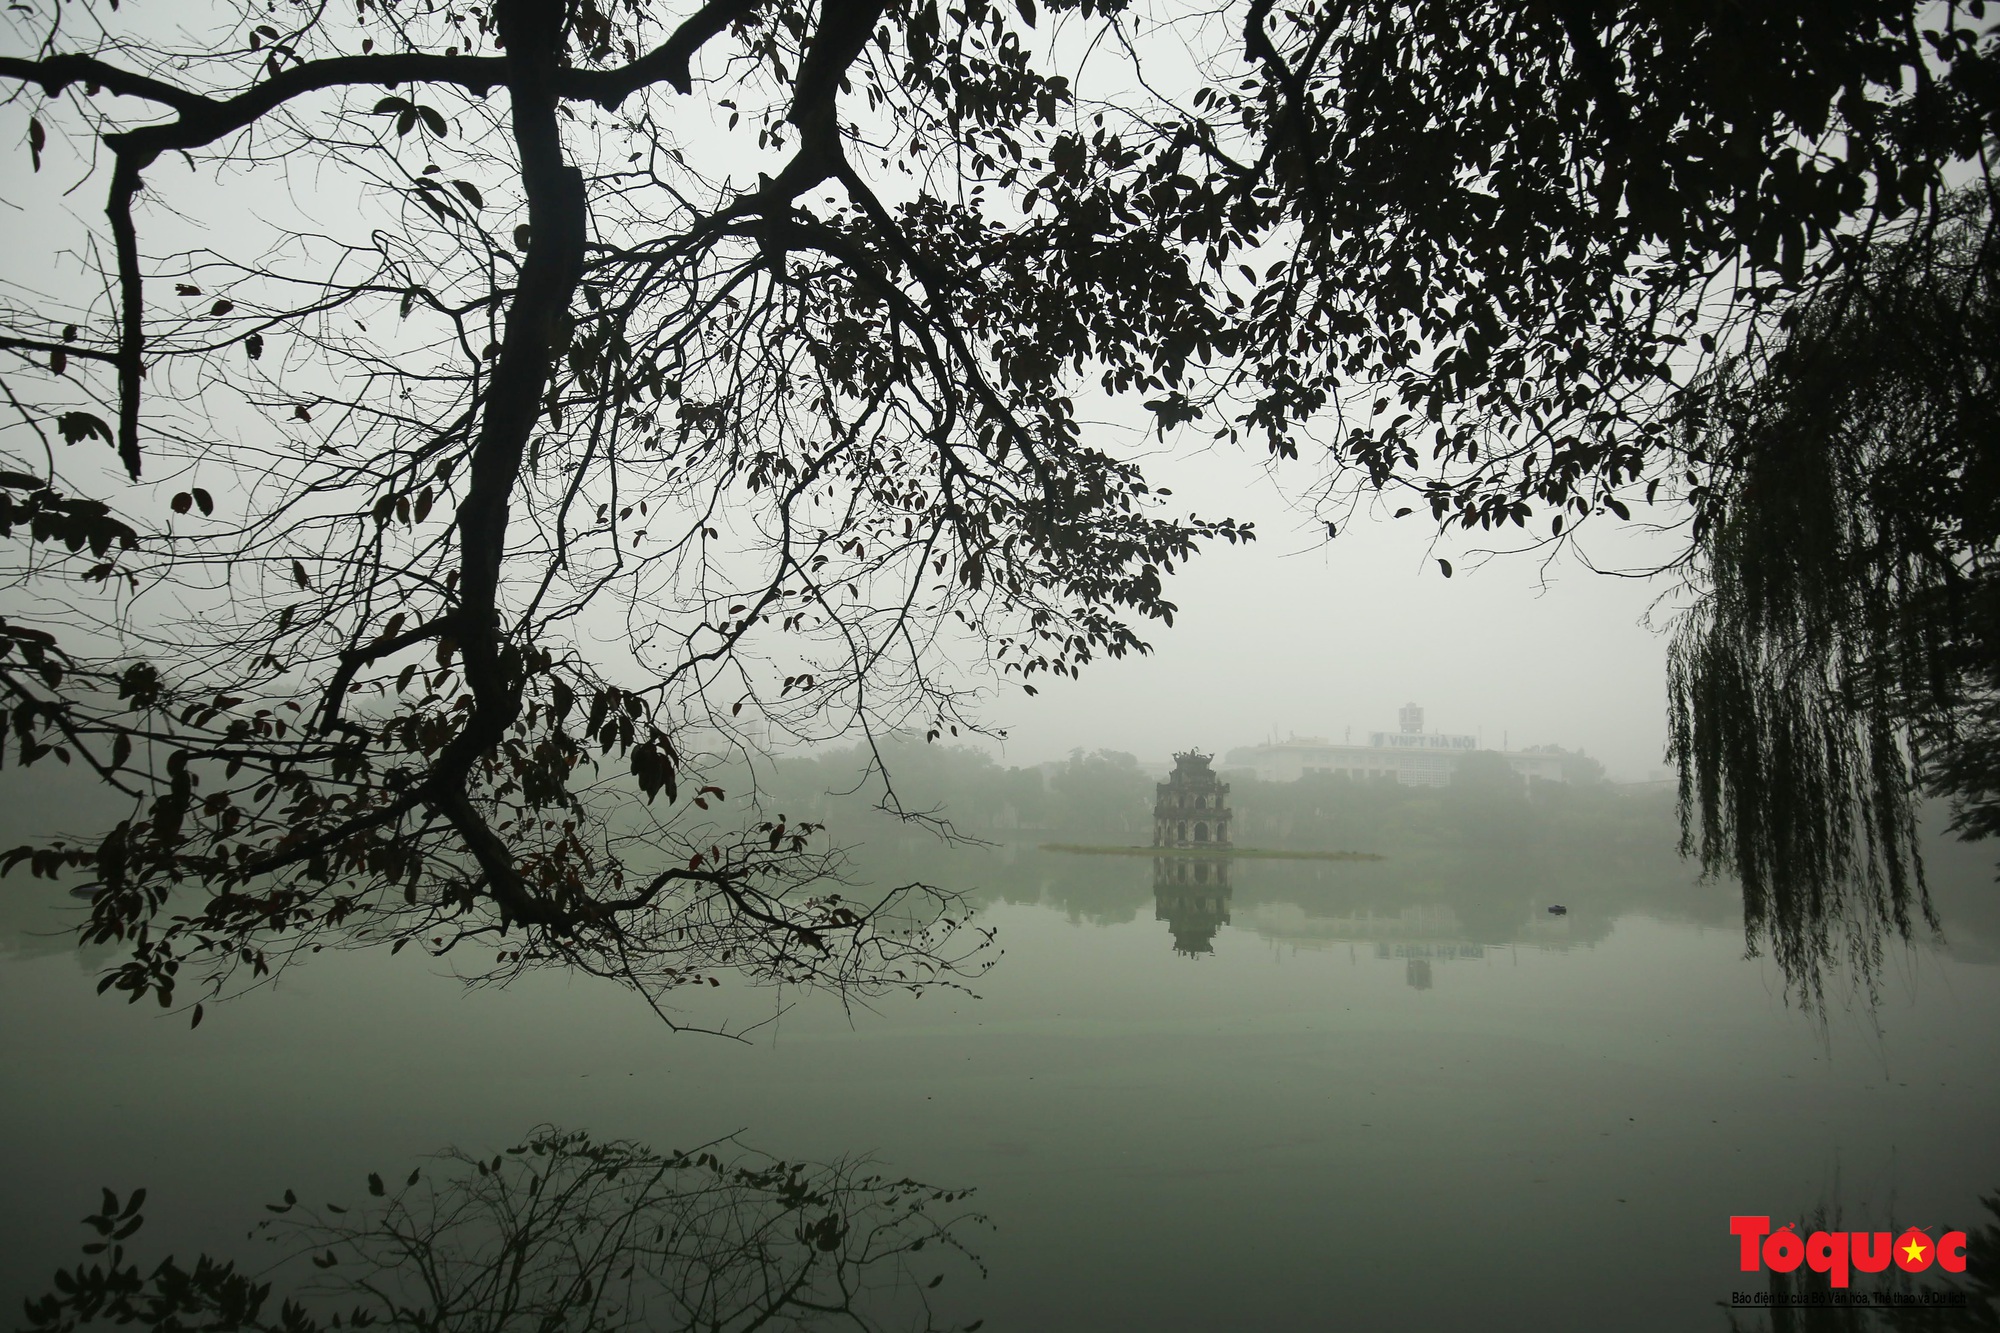 Hồ Gươm mờ ảo cổ kính, quyến rũ khi sương mù bao phủ - Ảnh 1.